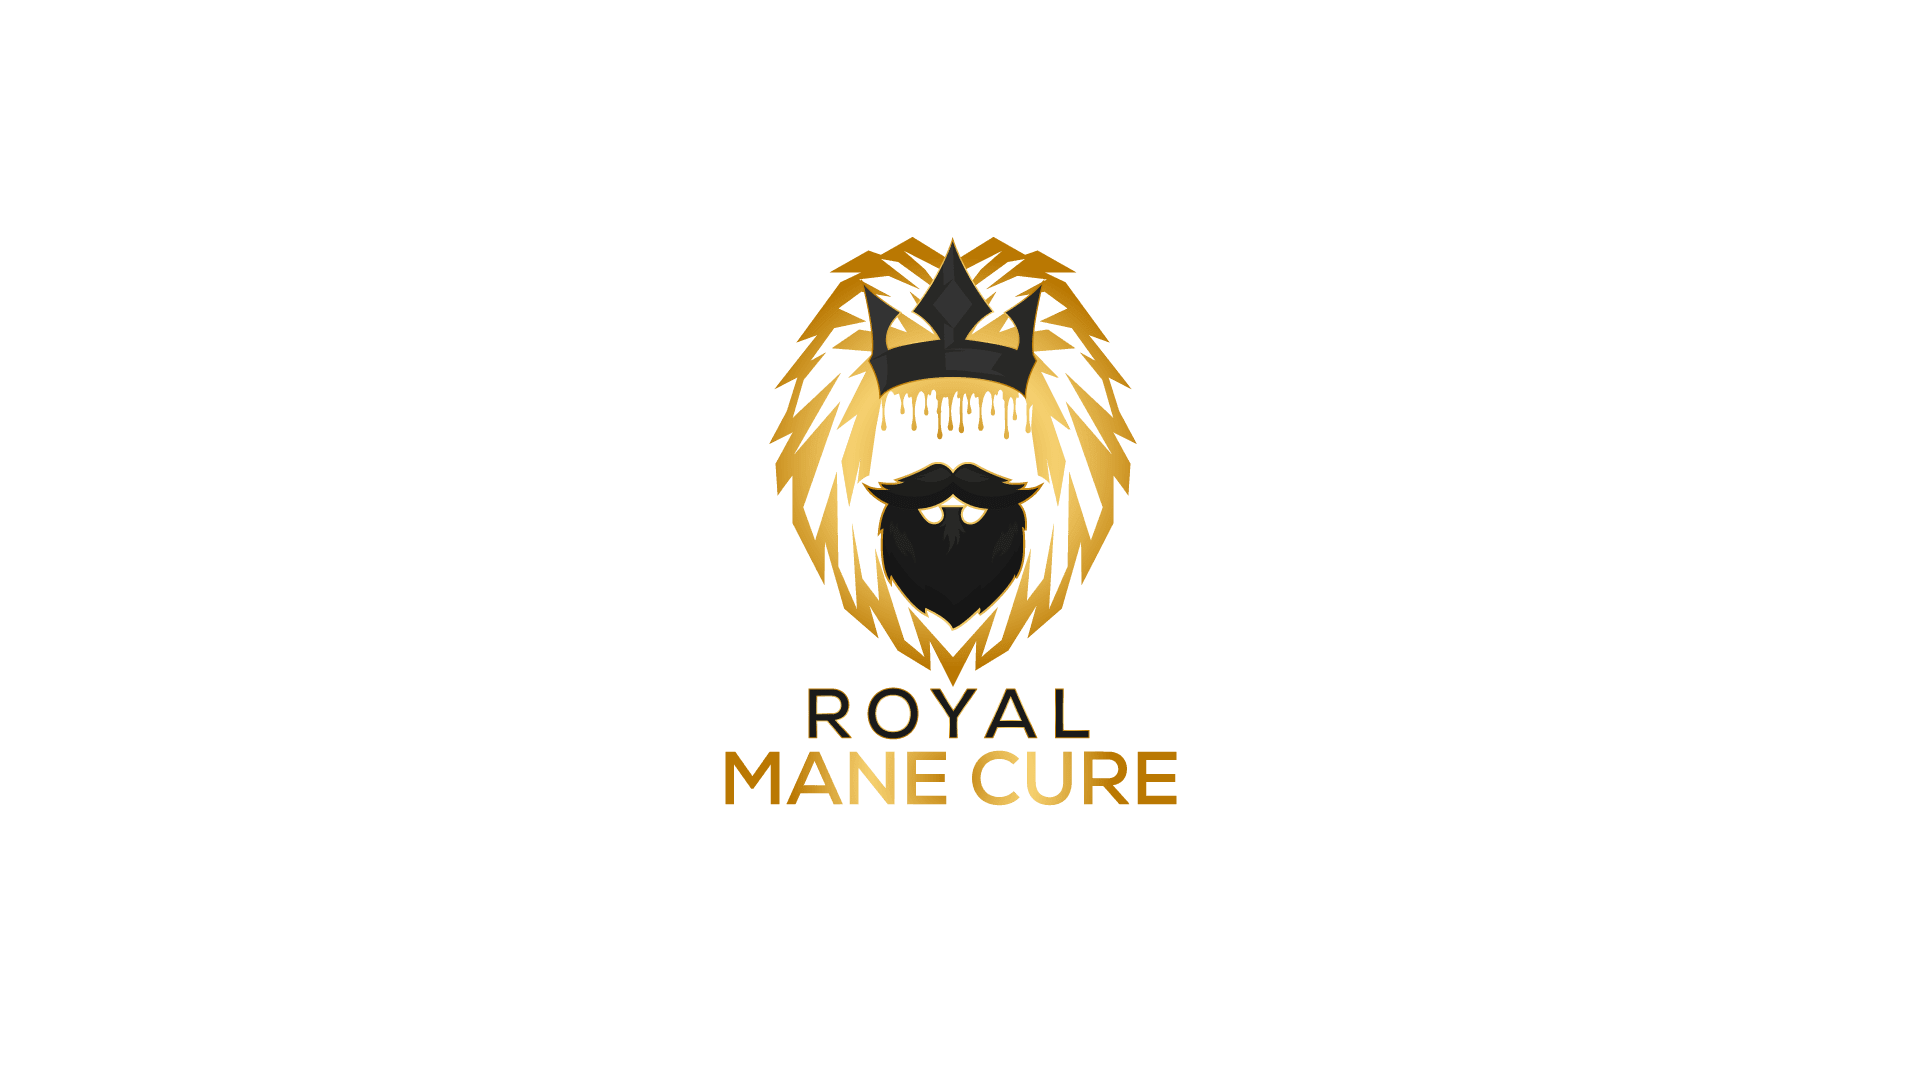 Royal Mane Cure